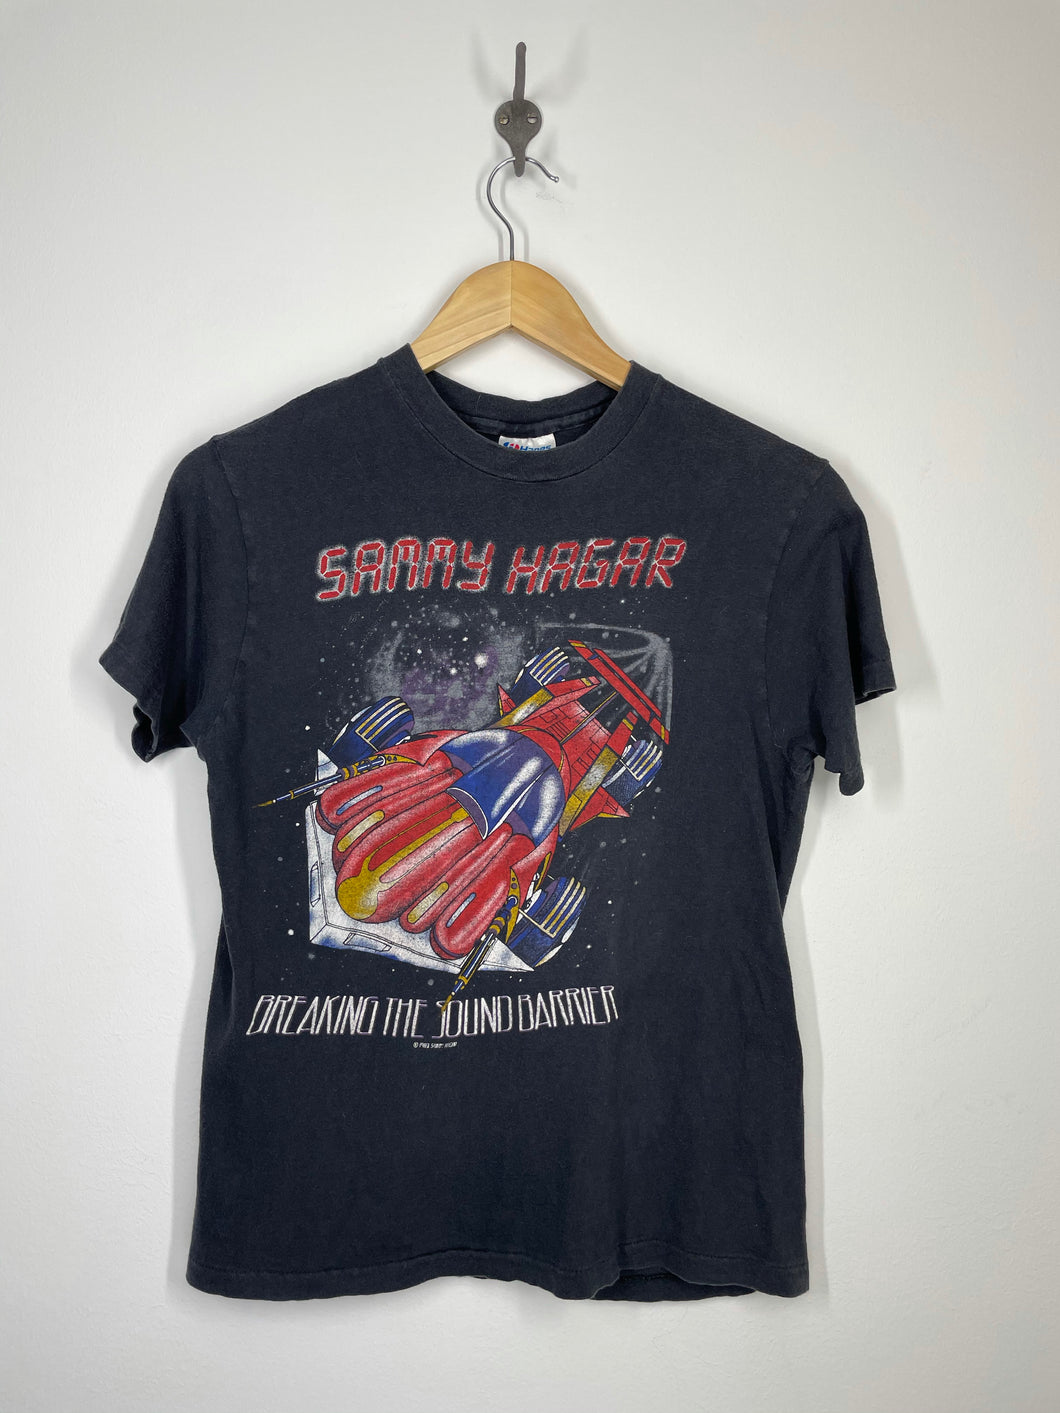 Sammy Hagar - 1983 The Red Rocker Tour Breaking the Sound Barrier Shirt - Hanes - M